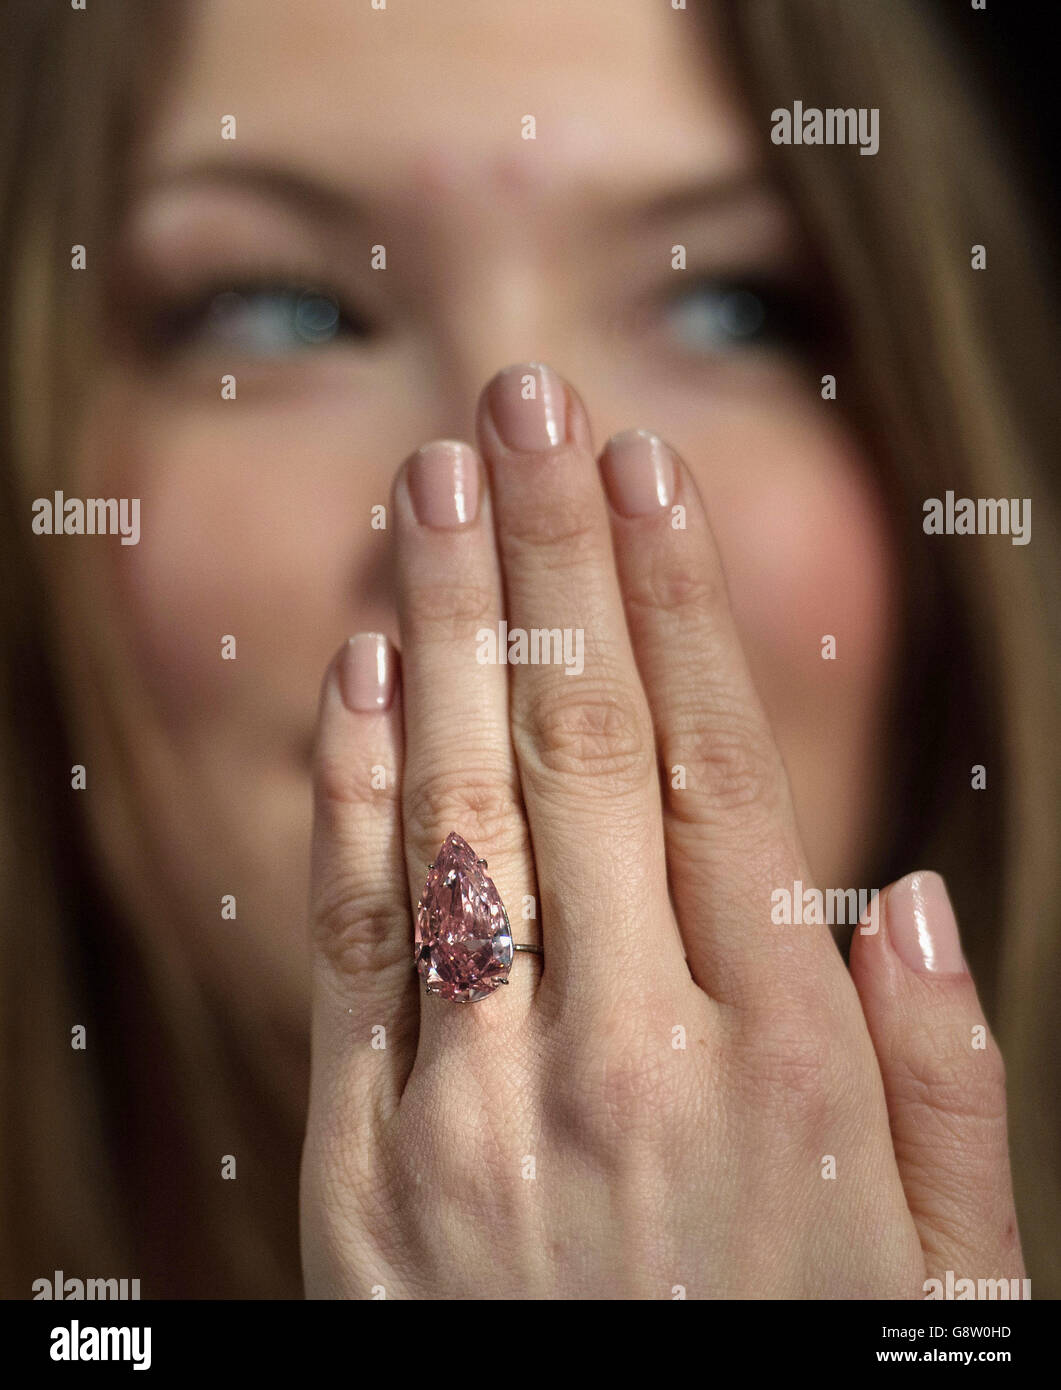 Ein Angestellter des Auktionshauses Sotheby's in London modelliert einen seltenen 'Fancy Vivid Pink' Diamanten namens 'Unique Pink', der im Mai in Genf zum Verkauf kommen wird, 15.38 Karat wiegt und voraussichtlich rund 28-38 Millionen Dollar einbringt. Stockfoto